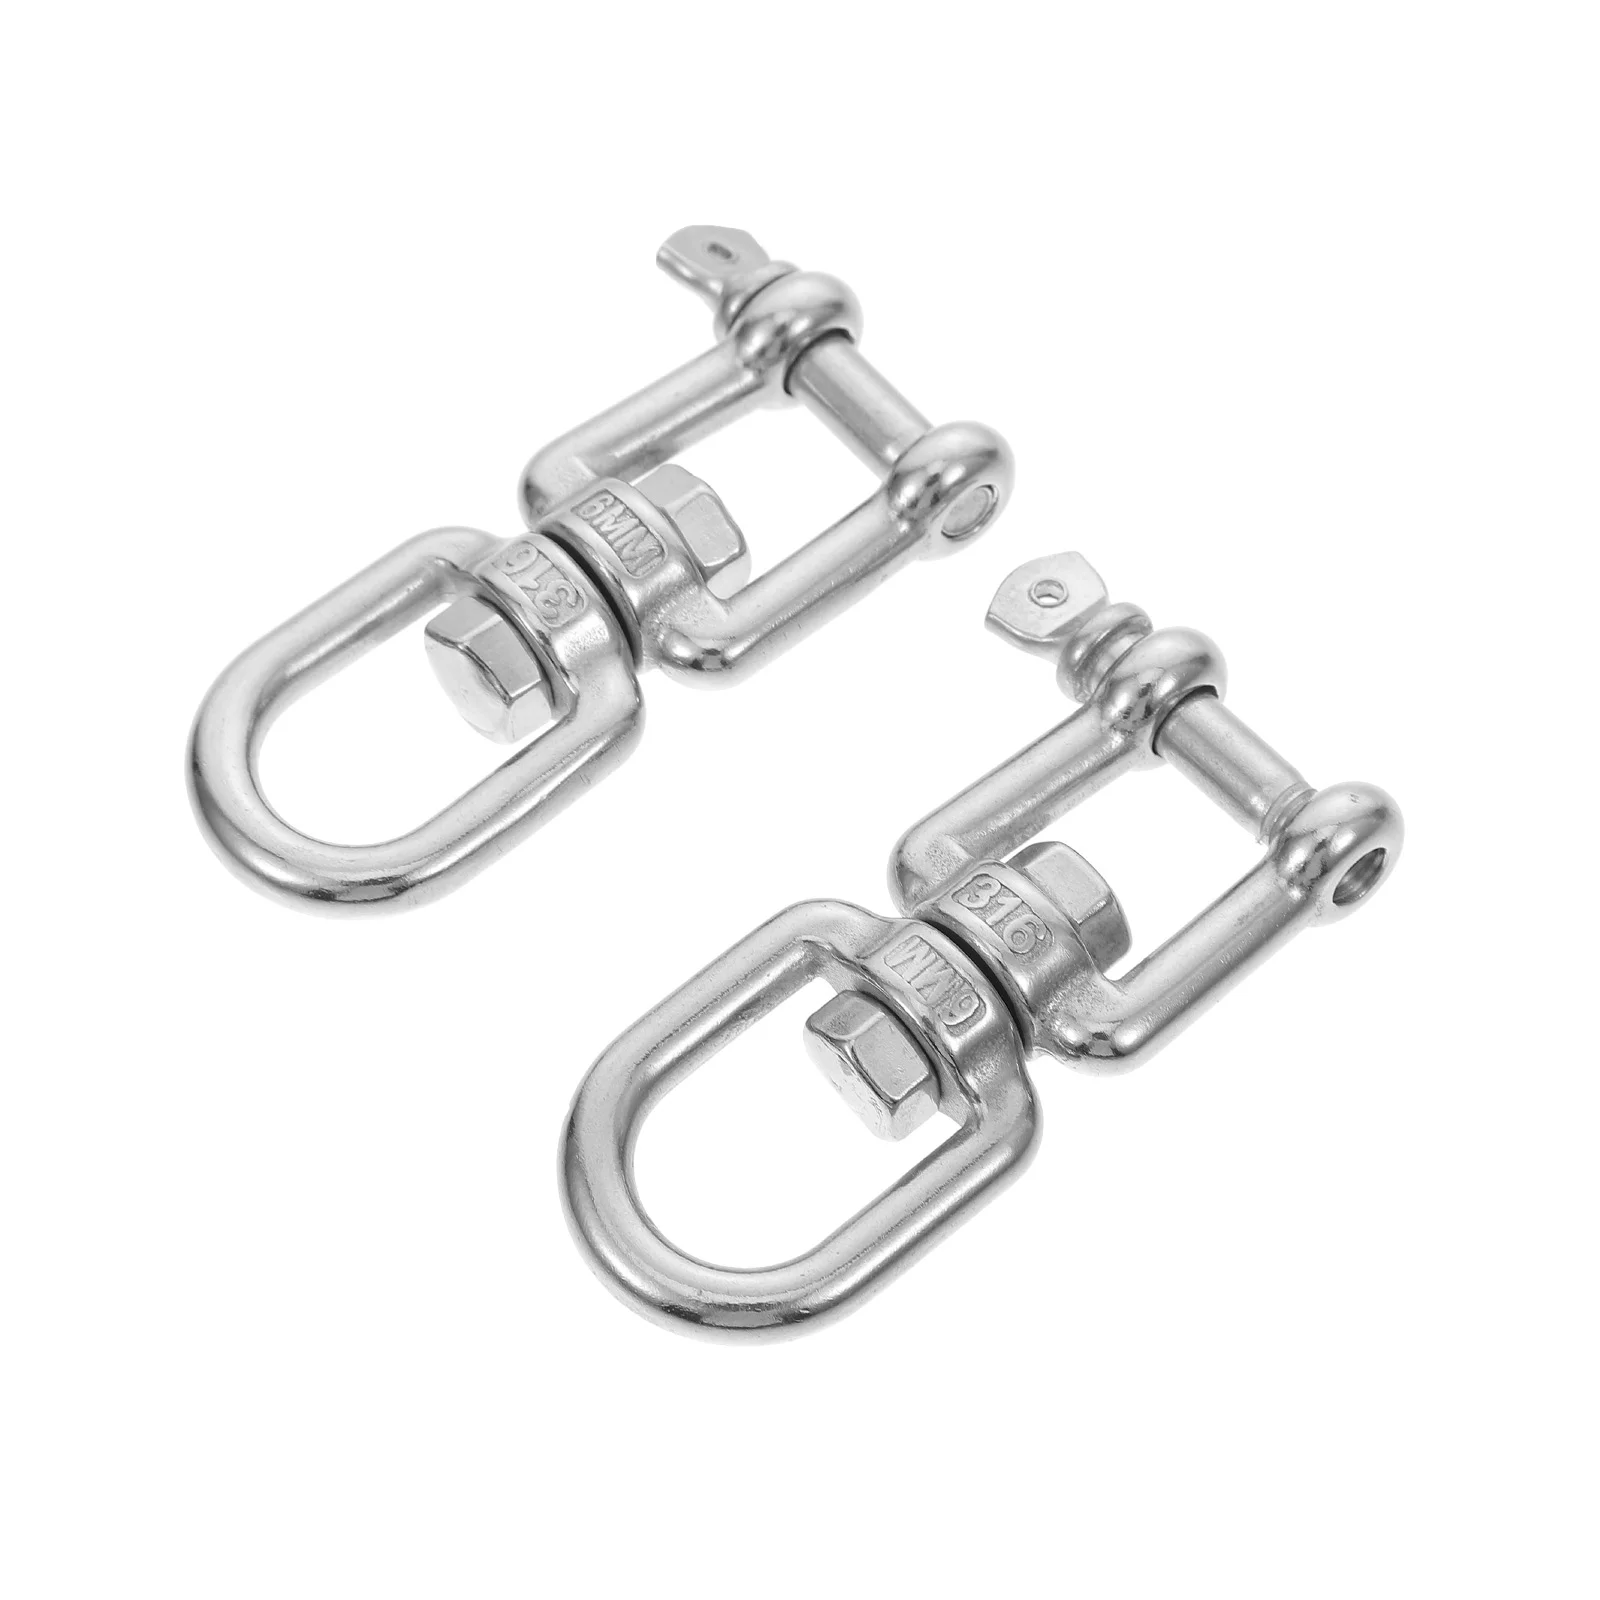 

2 Pcs Stainless Steel Swivel Ring Hooks Hammock Sandbag Hanger Marine Connector Eye